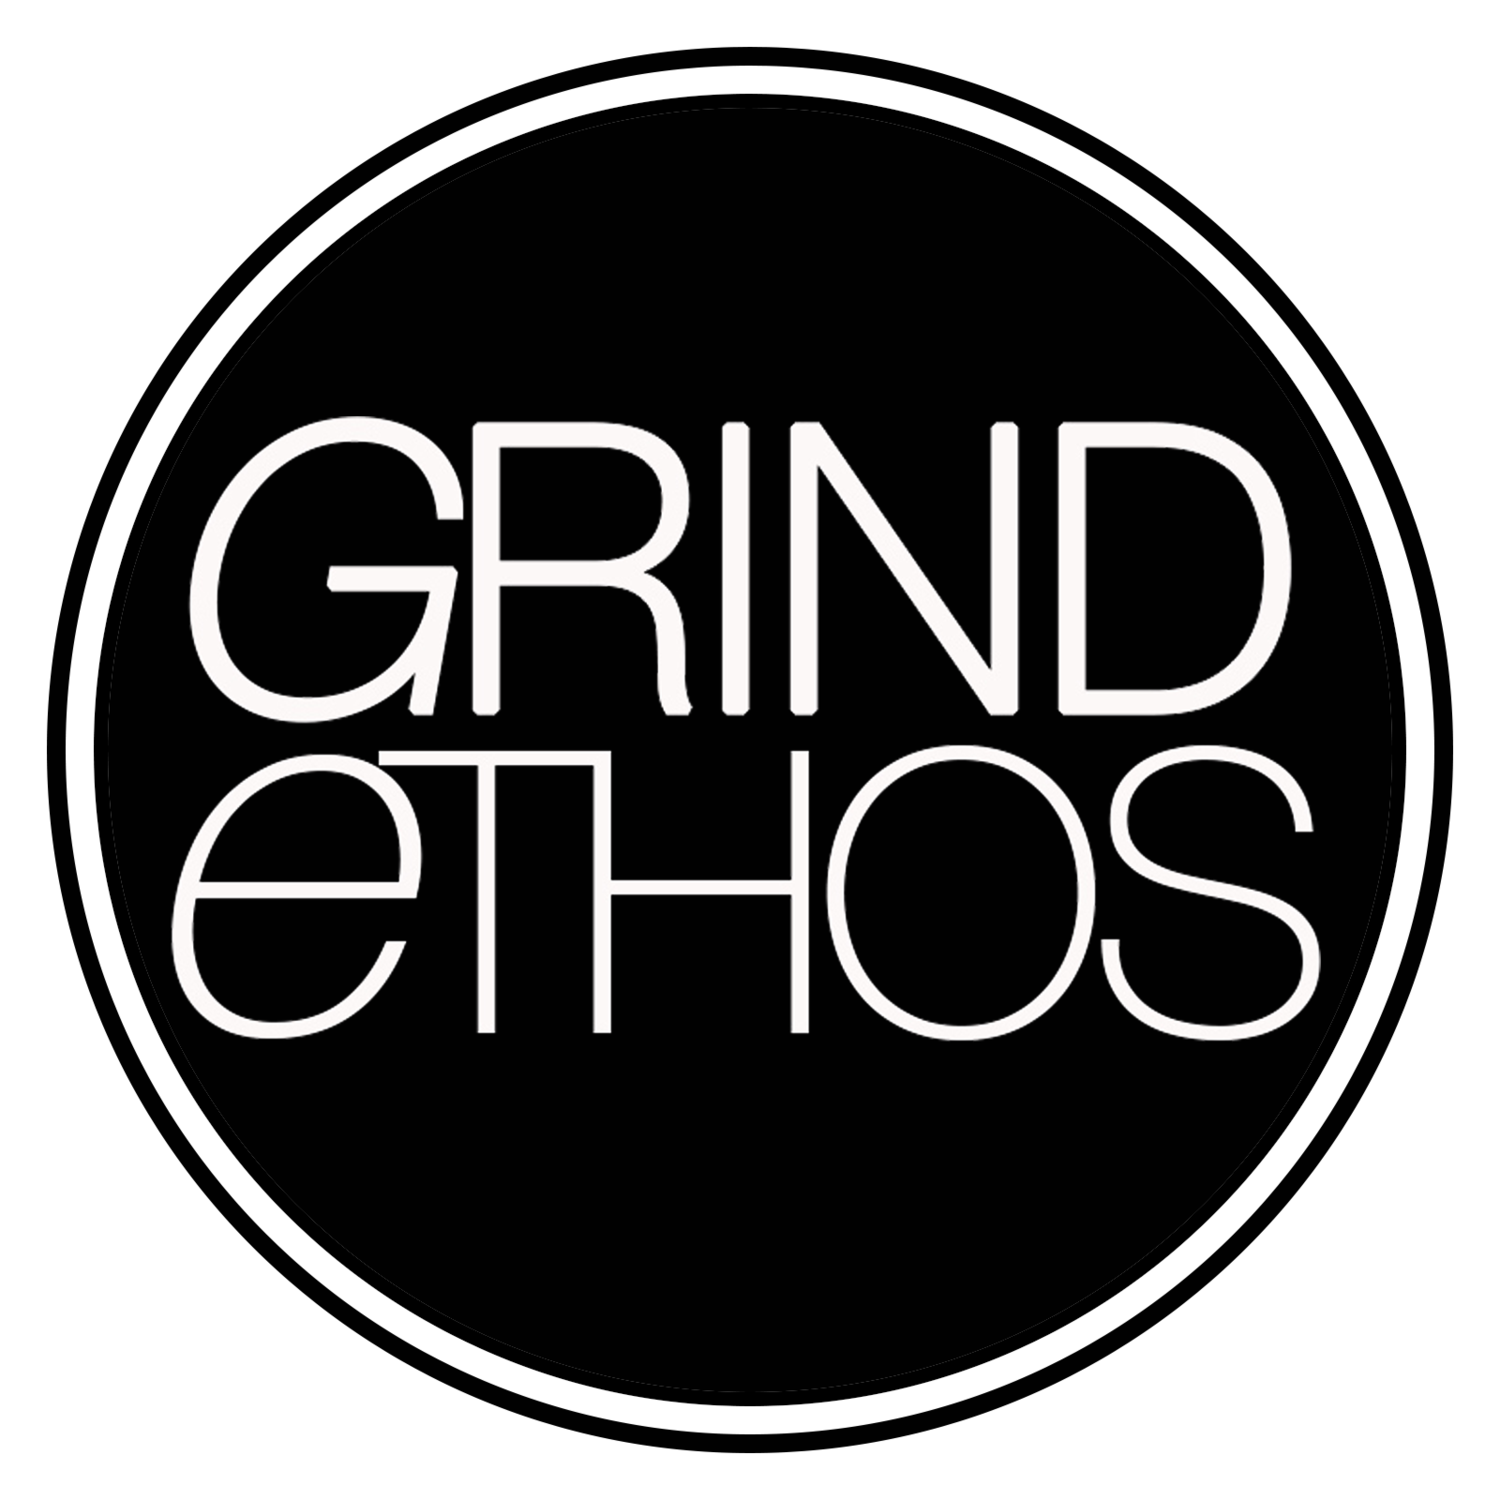 GrindEthos Artist Services